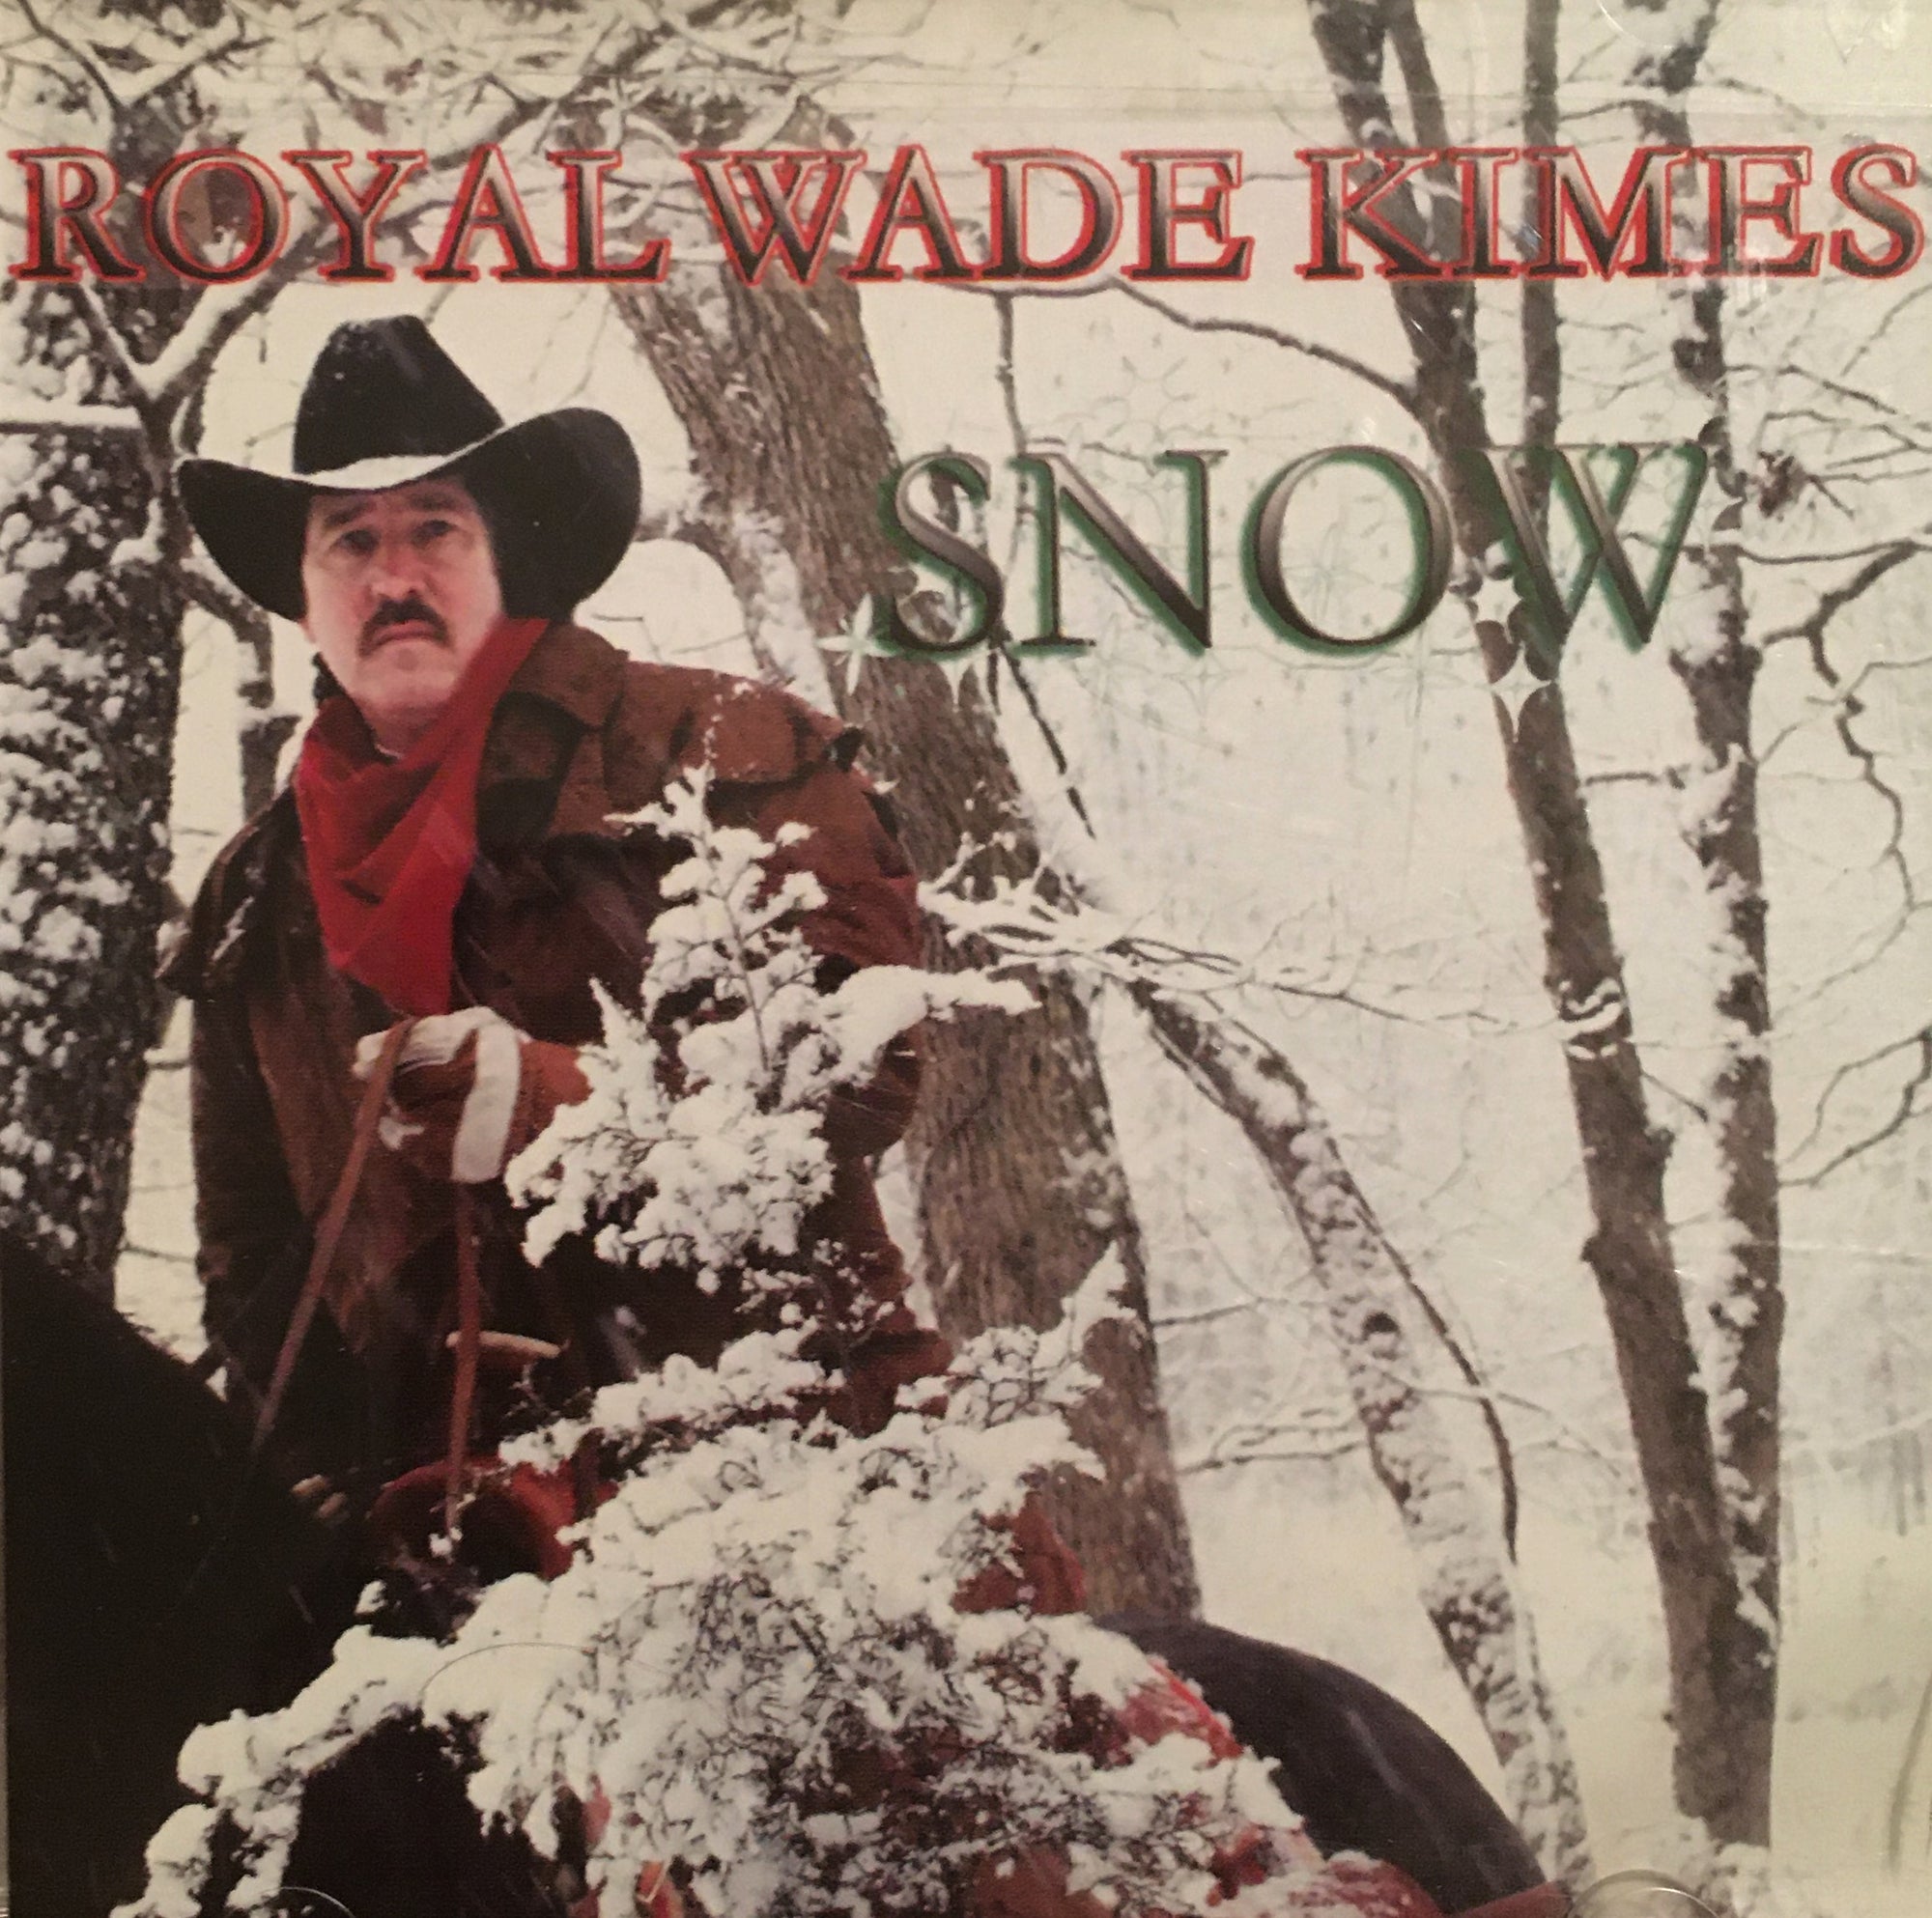 CD Snow by Royal Wade Kimes